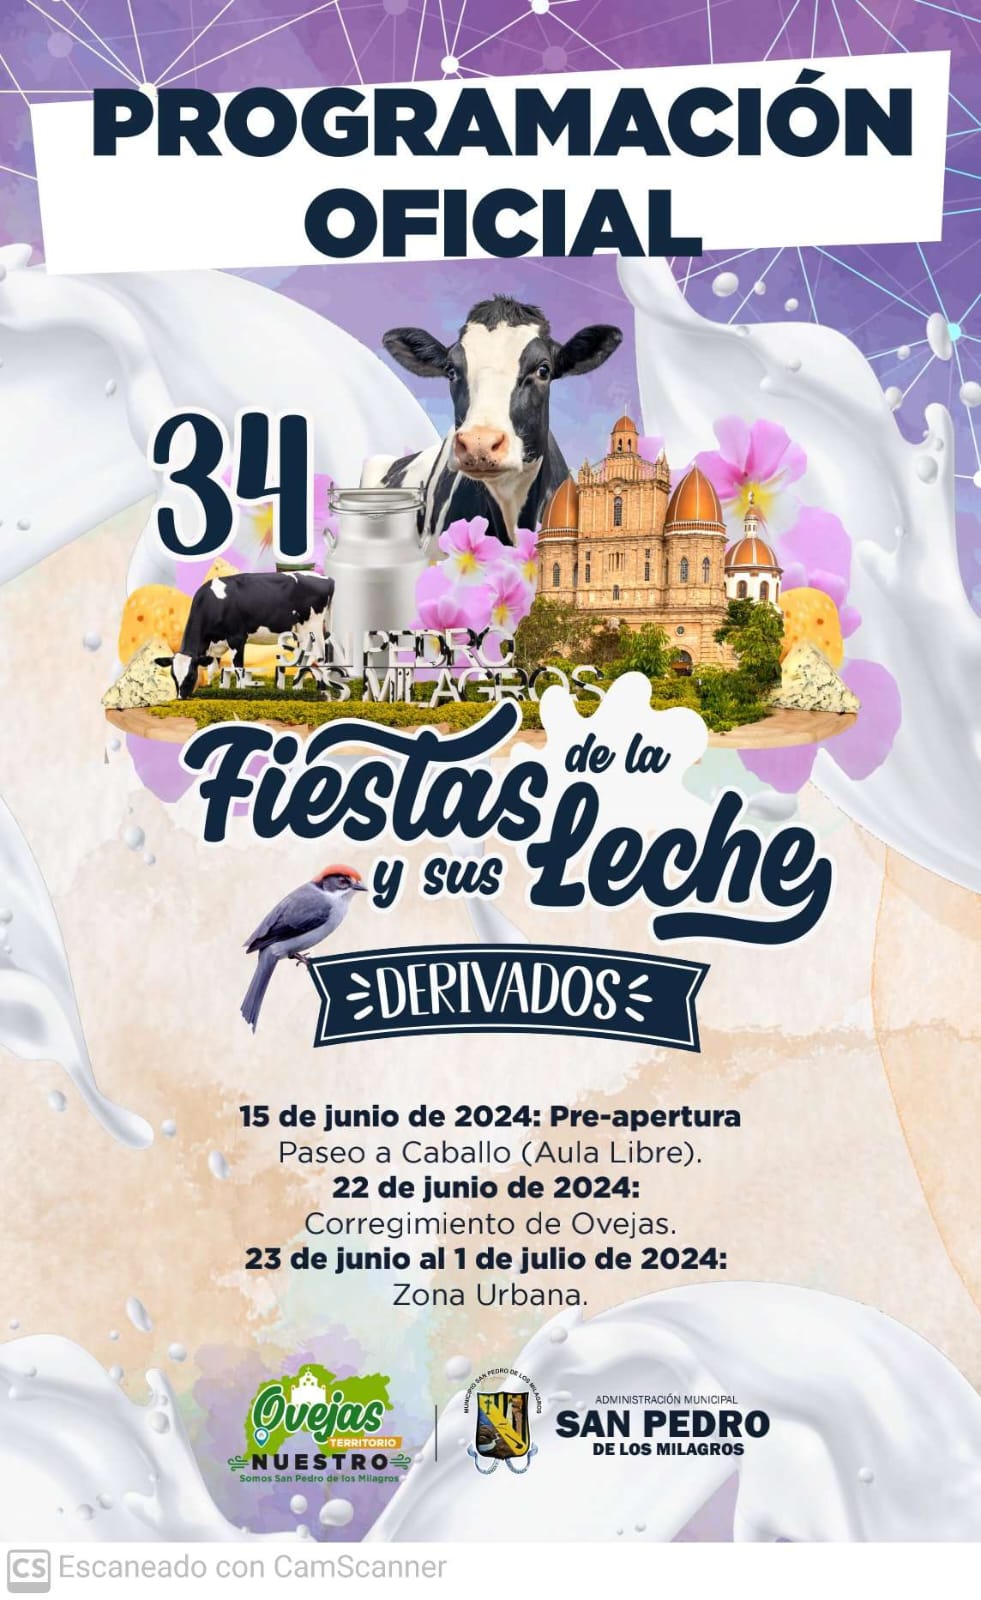 Fiestas de la Leche 2024 - San Pedro de los Milagros - Antioquia - 1